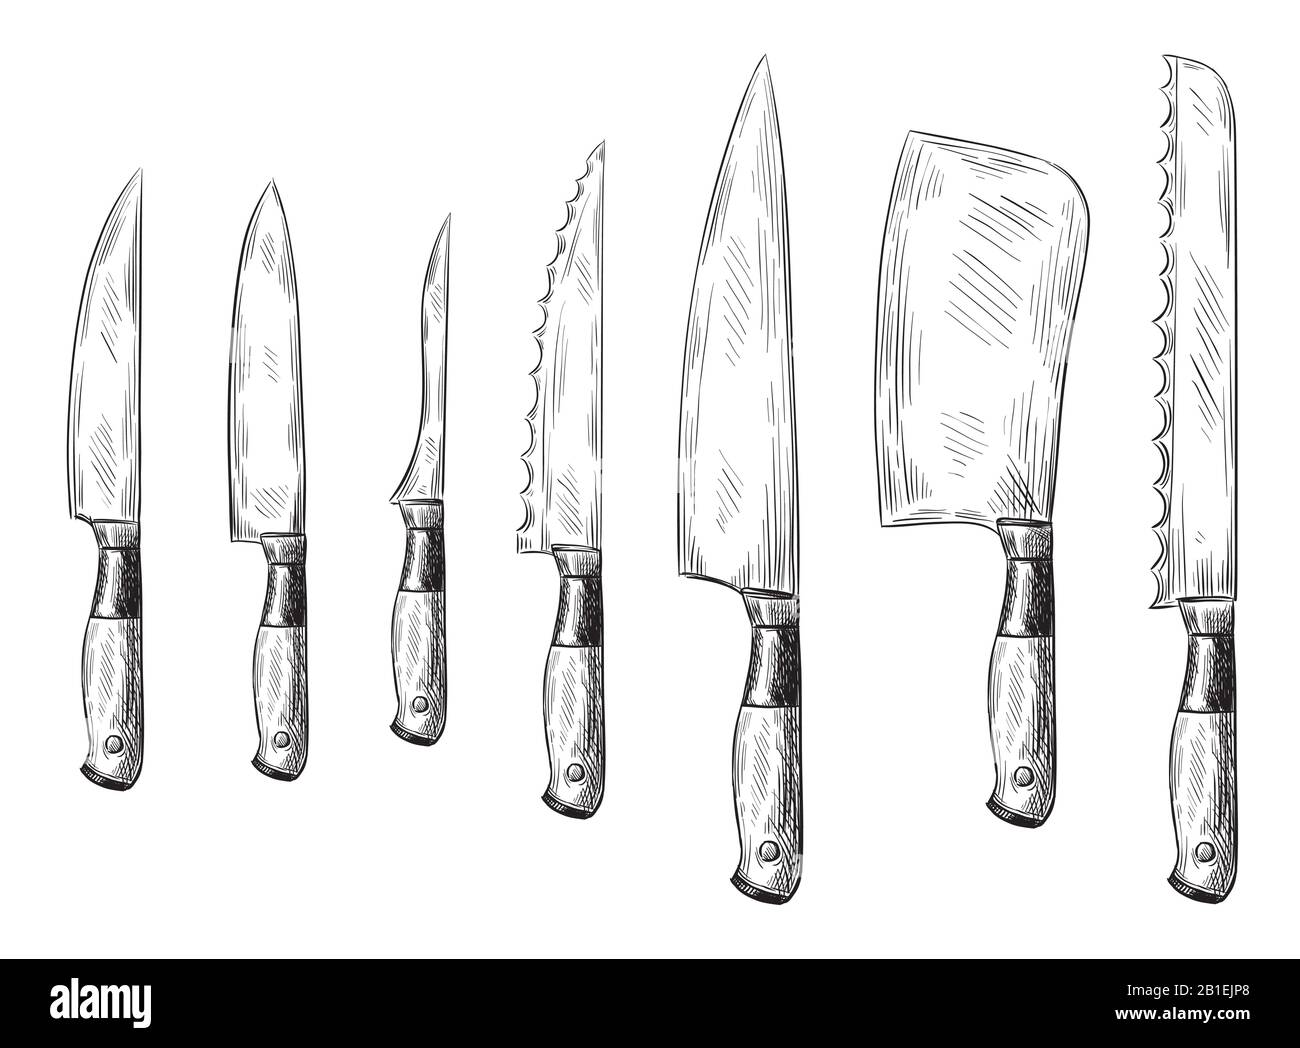 Cuchillo de cena dibujado a mano. Cuchillos clásicos del chef, juego de ilustración vectorial de cuchillos de cocina grabados Ilustración del Vector